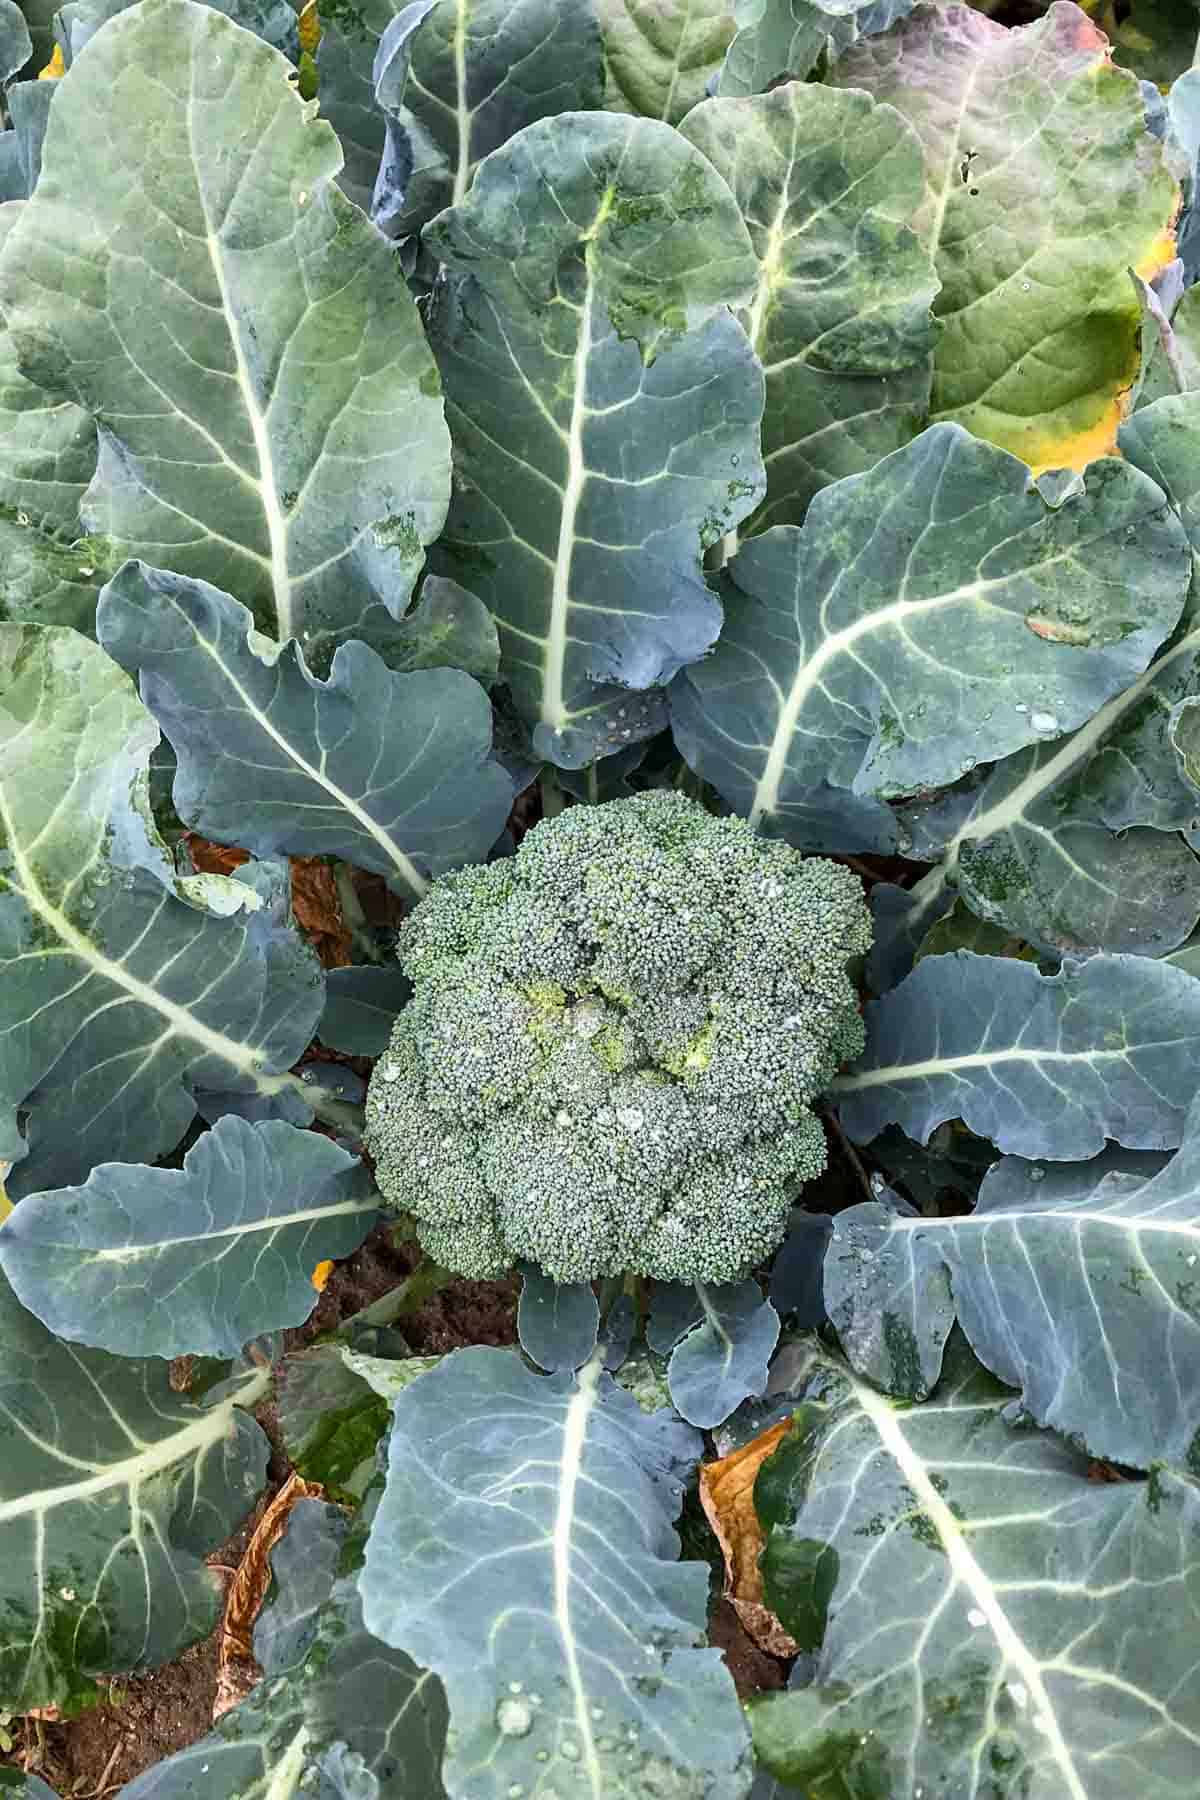 Head of broccoli growing in a field.